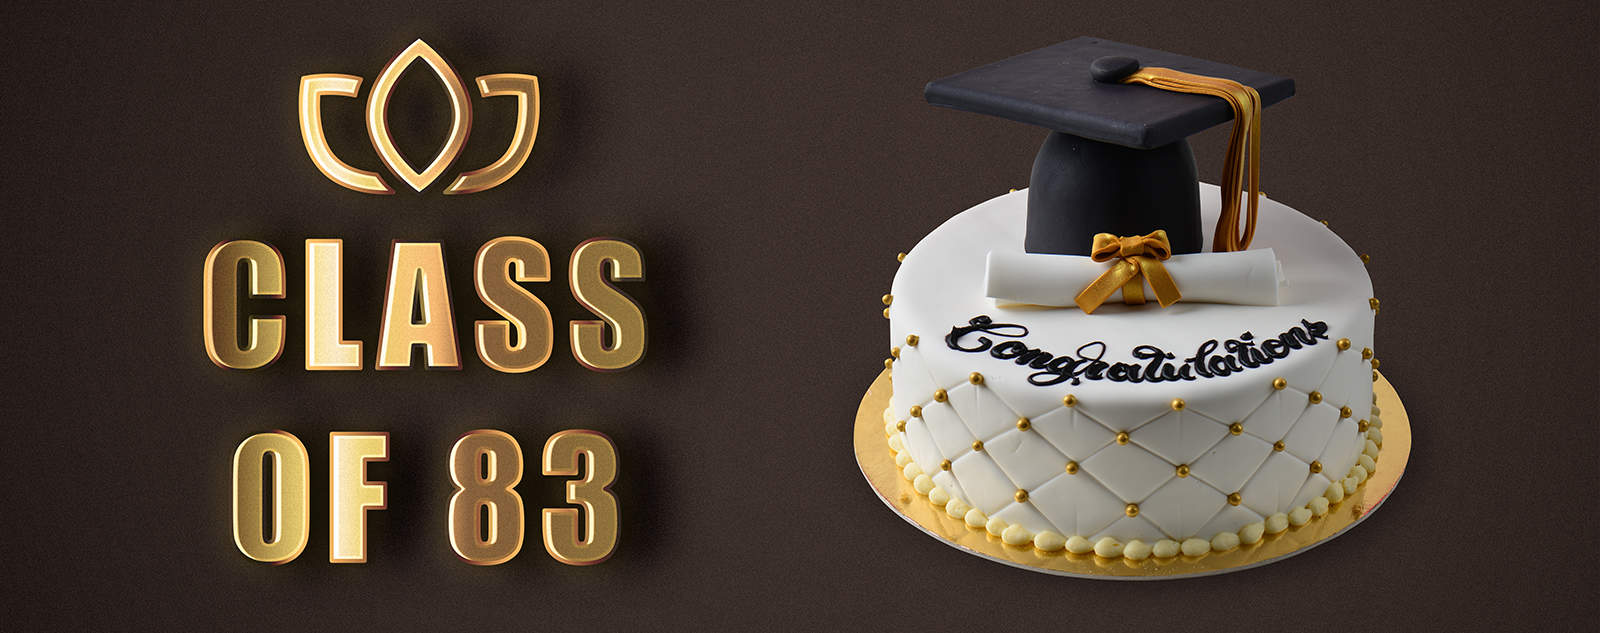 graduation cake for class of 1983